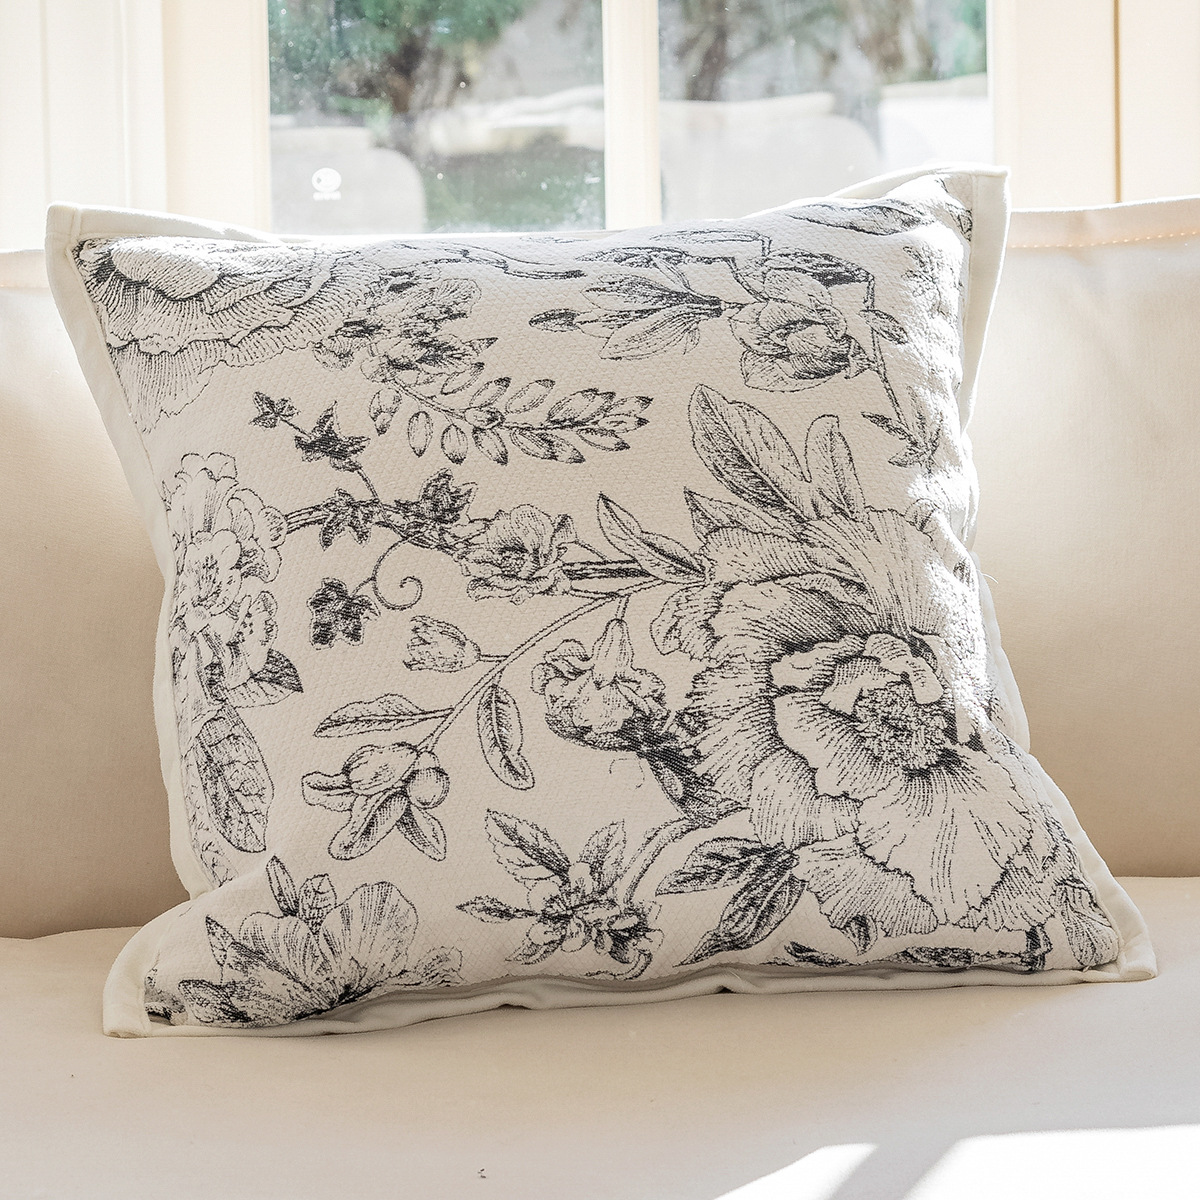 居言尚品中古轻法式沙发靠枕北欧客厅装饰刺绣花朵抱枕套床头靠垫 - 图2